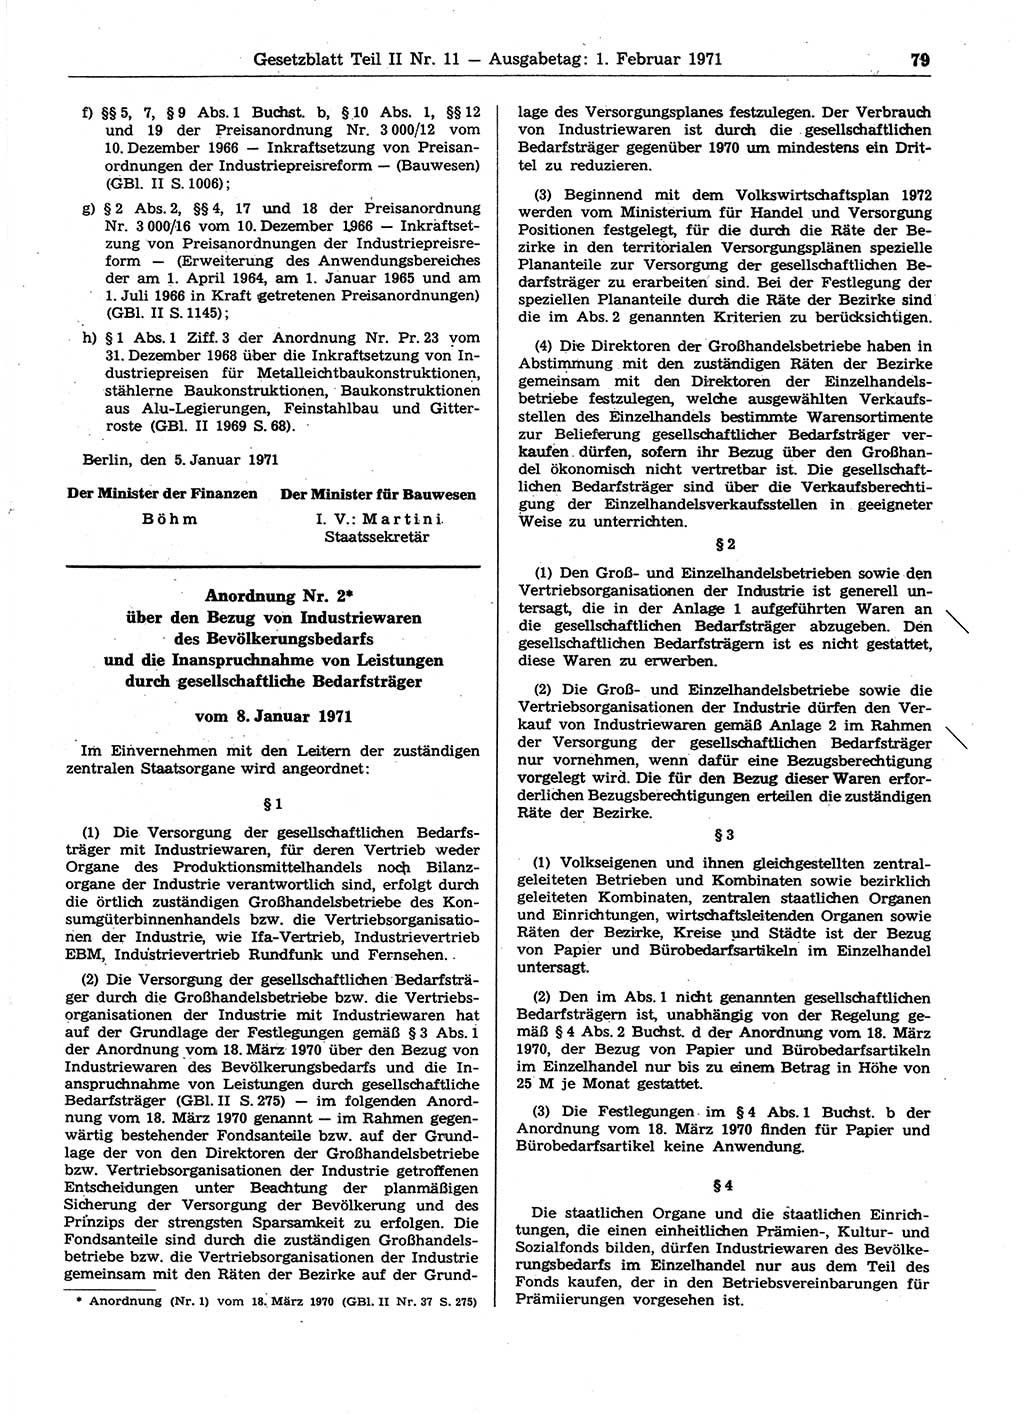 Gesetzblatt (GBl.) der Deutschen Demokratischen Republik (DDR) Teil ⅠⅠ 1971, Seite 79 (GBl. DDR ⅠⅠ 1971, S. 79)